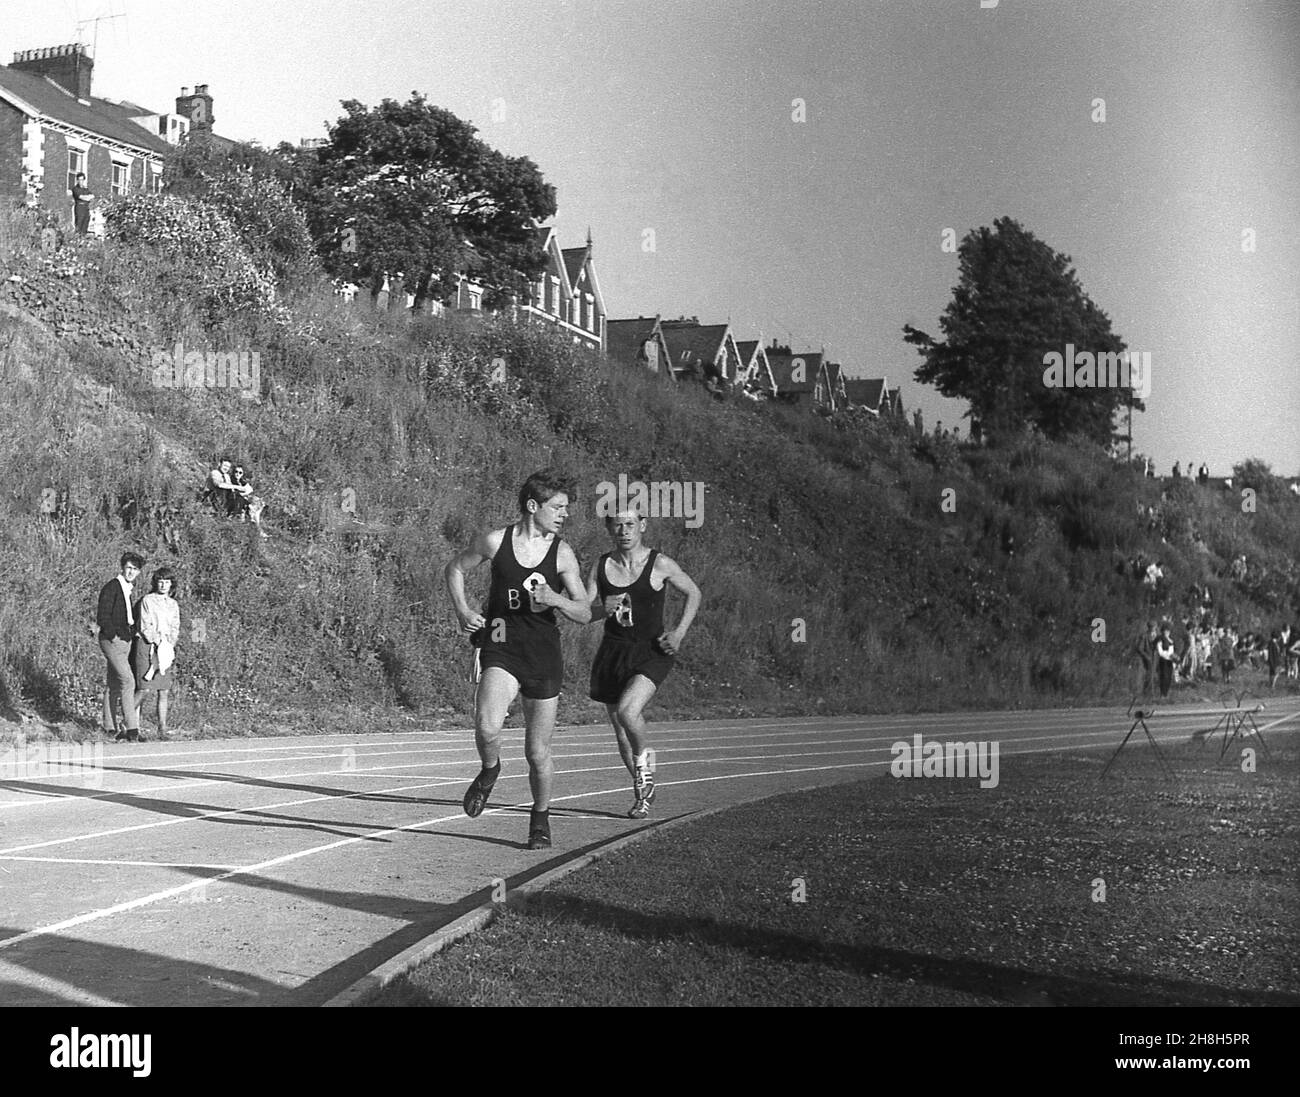 1964, historique, estival et extérieur sur une piste de cendre, deux adolescents se disputent une course à pied lors d'une journée de sports d'école de comté, Devon, Angleterre, Royaume-Uni. Banque D'Images